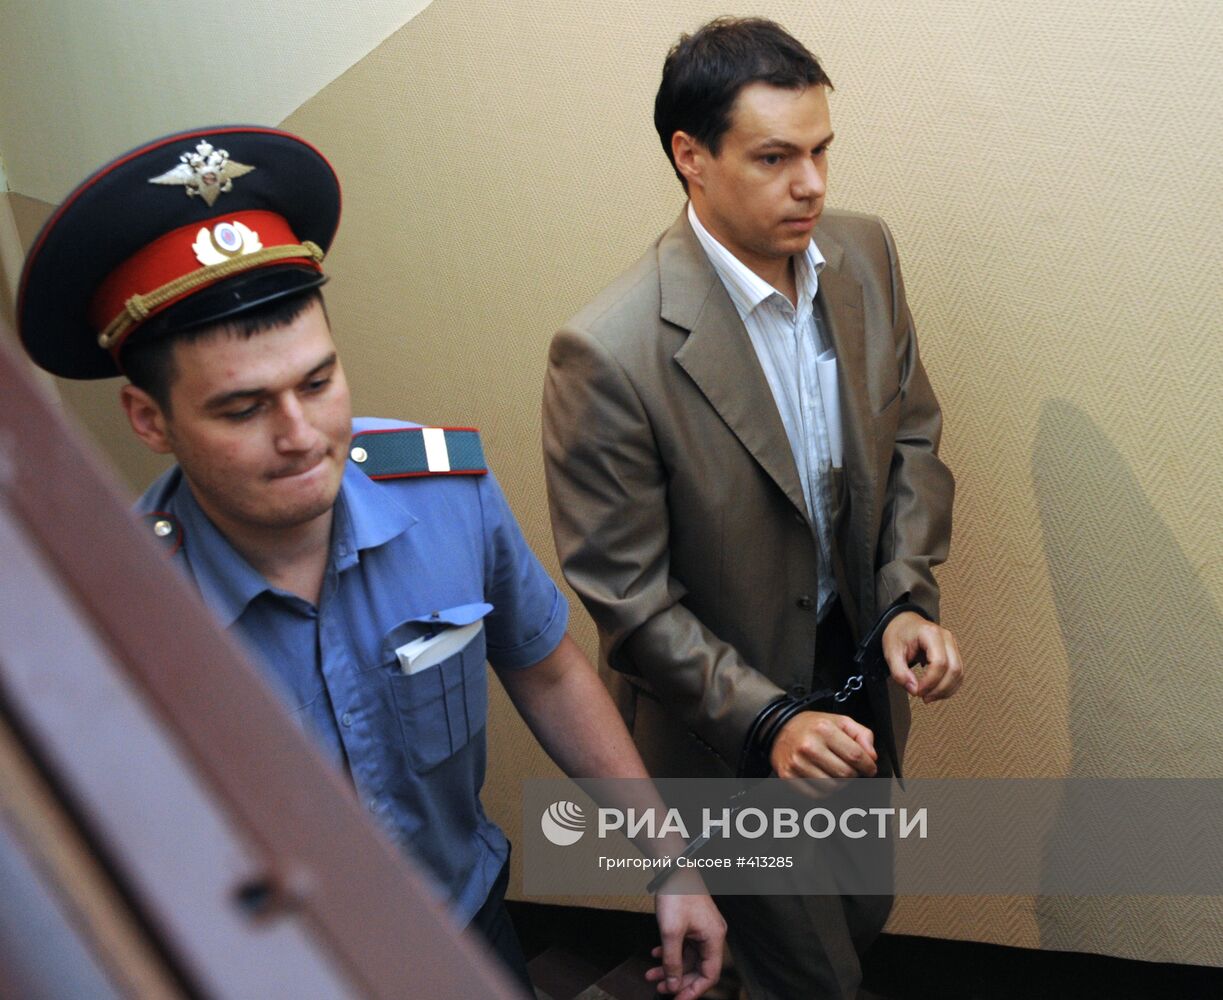 Сергей Бобылев доставлен в Тверской суд Москвы